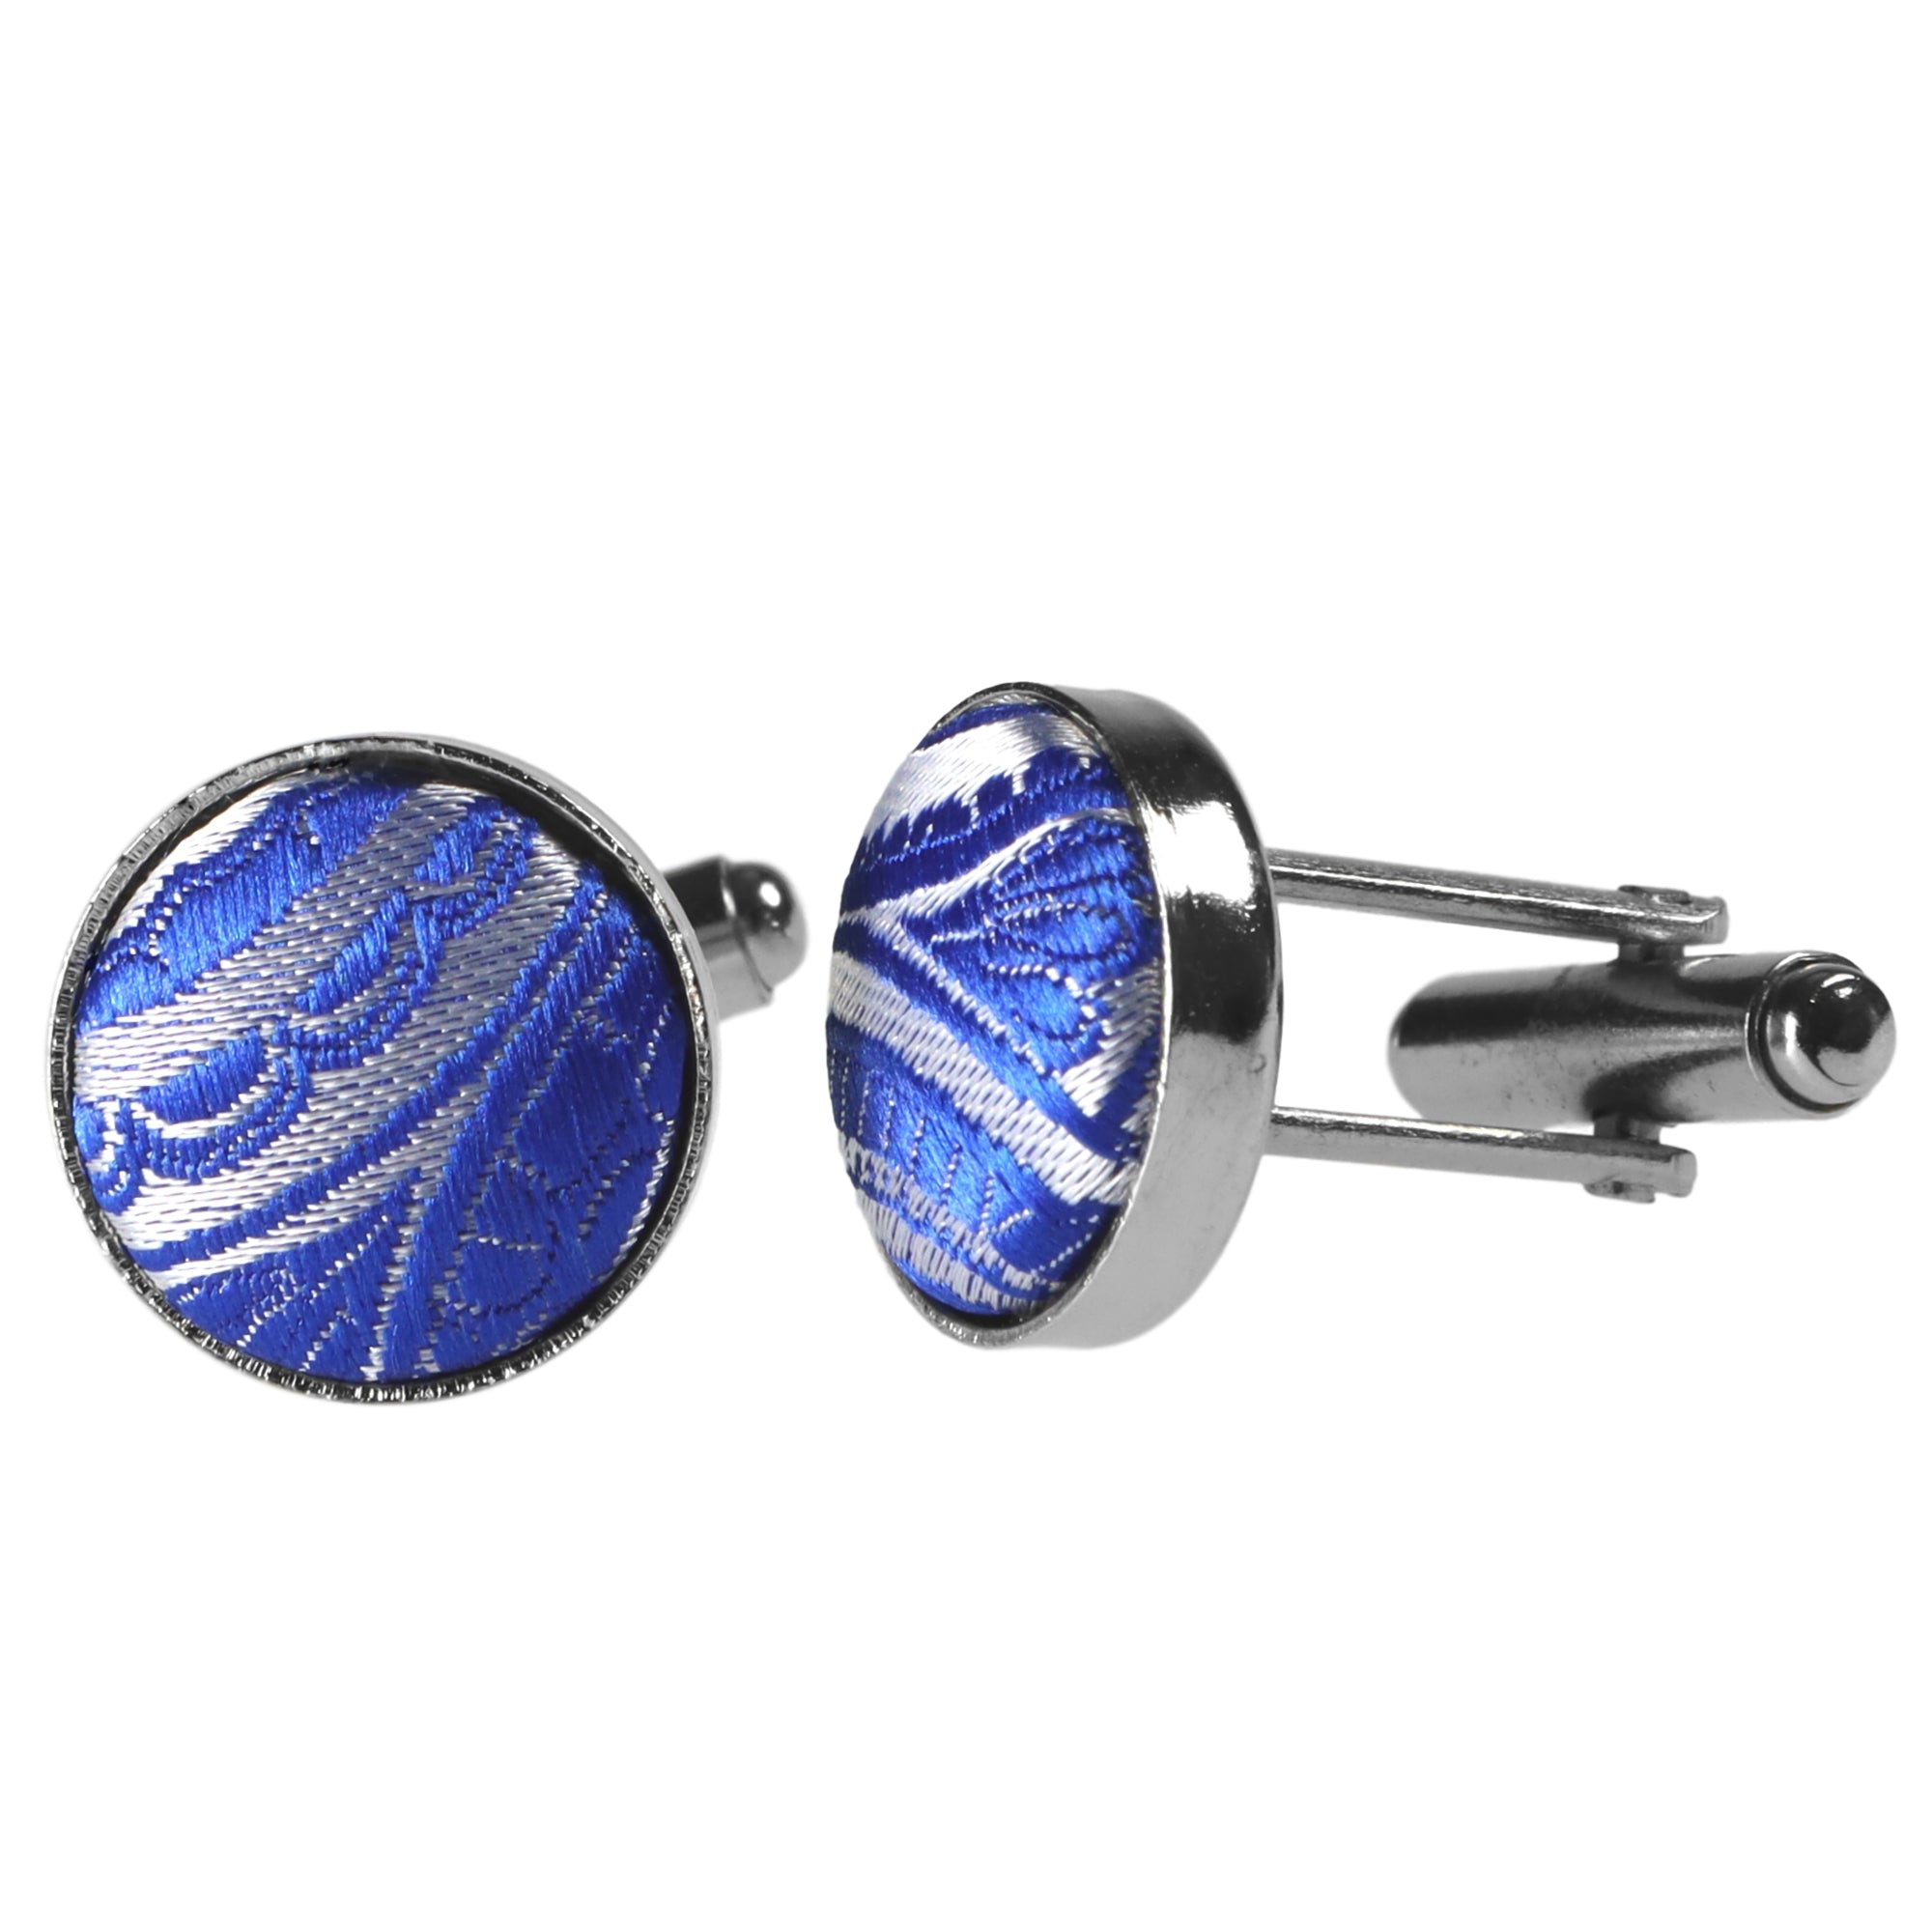 Kaufen Sie Silber-Blaue Paisley-Krawatte | designt für GASSANIshop.de -  GASSANI Krawatten